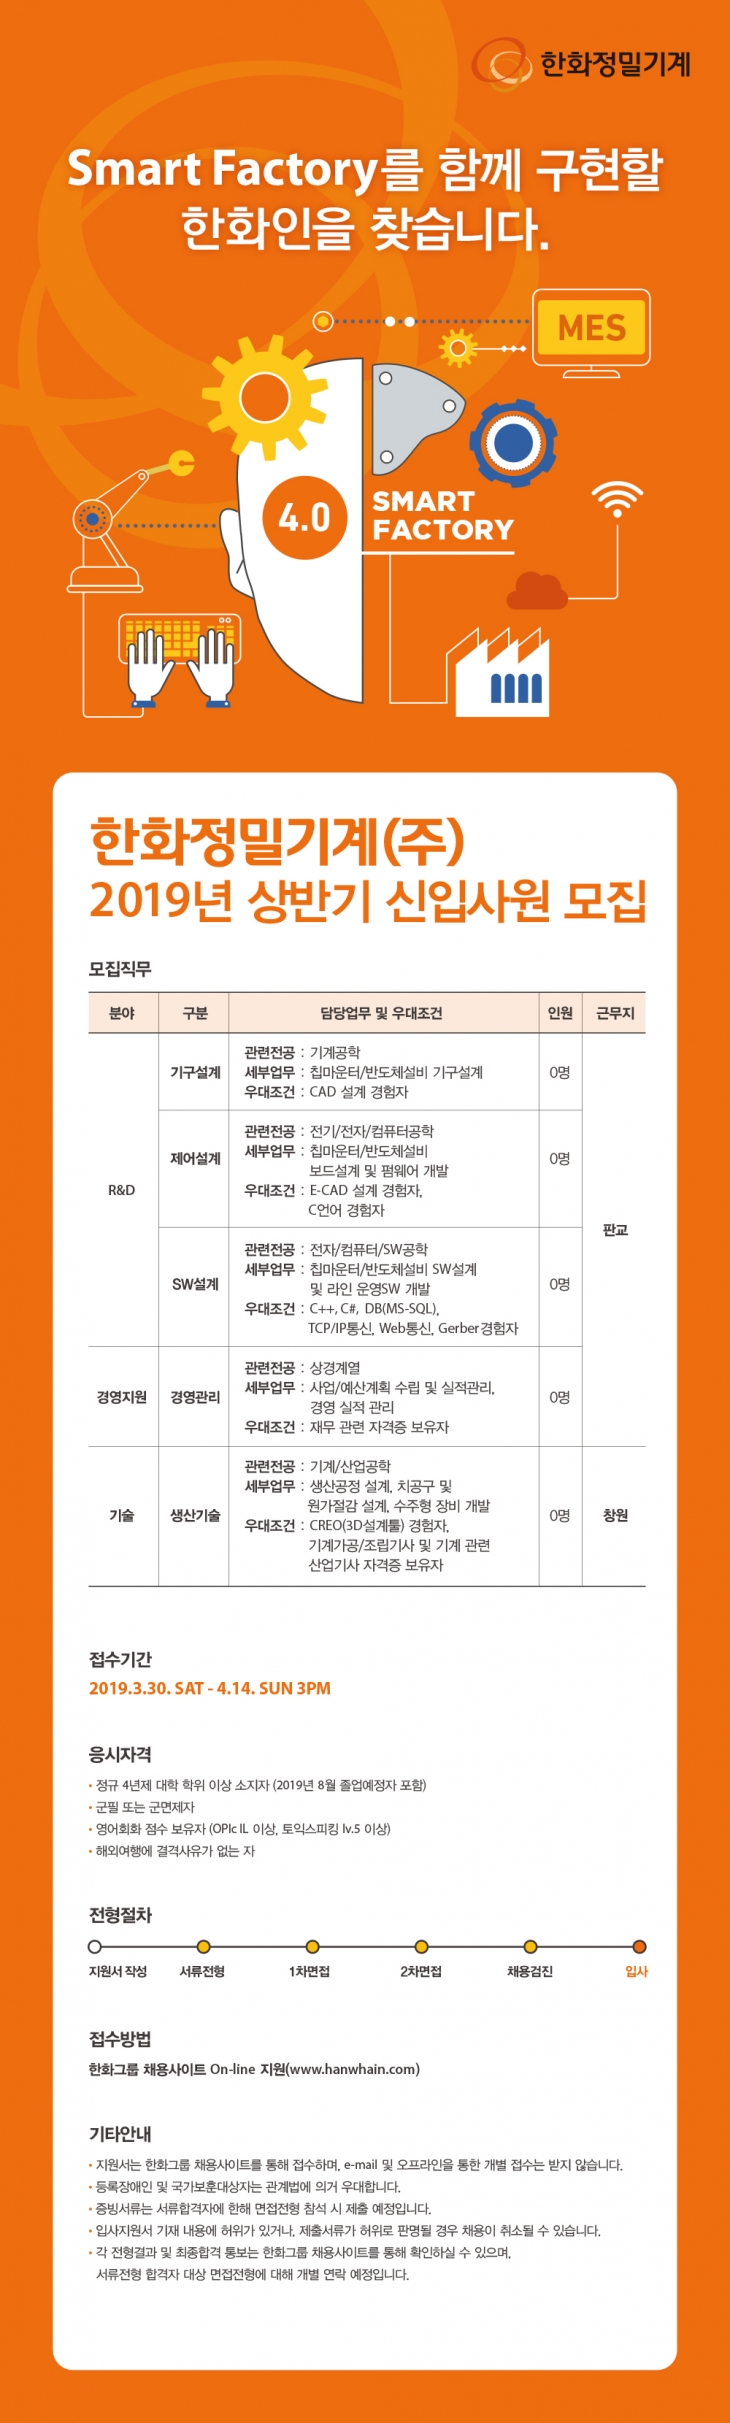 2019 한화정밀기계 신입사원 채용 ~4/14